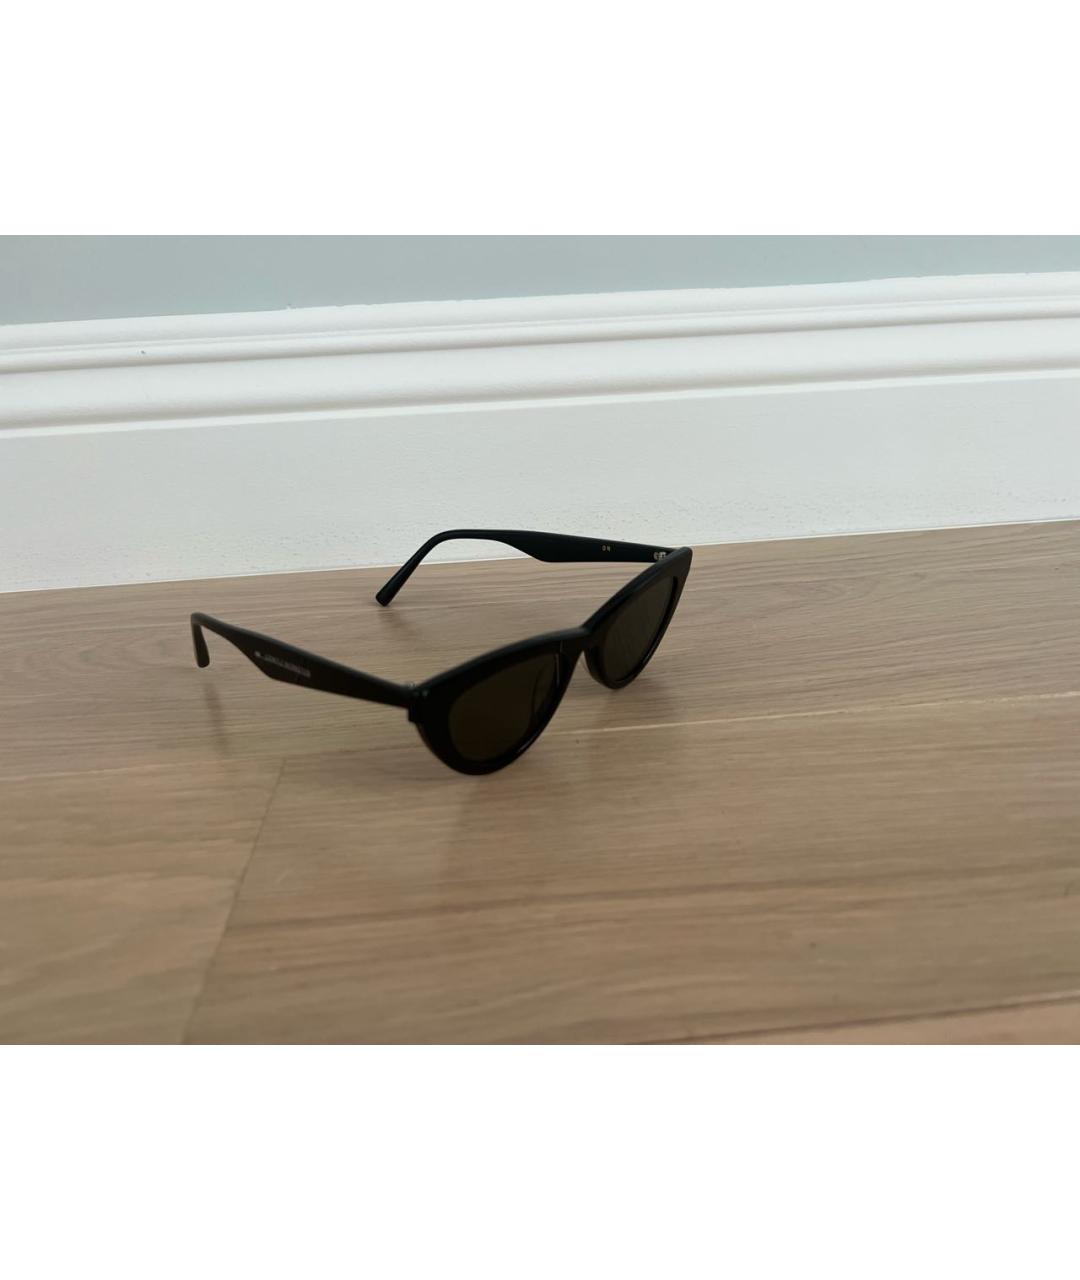 GENTLE MONSTER Черные пластиковые солнцезащитные очки, фото 2